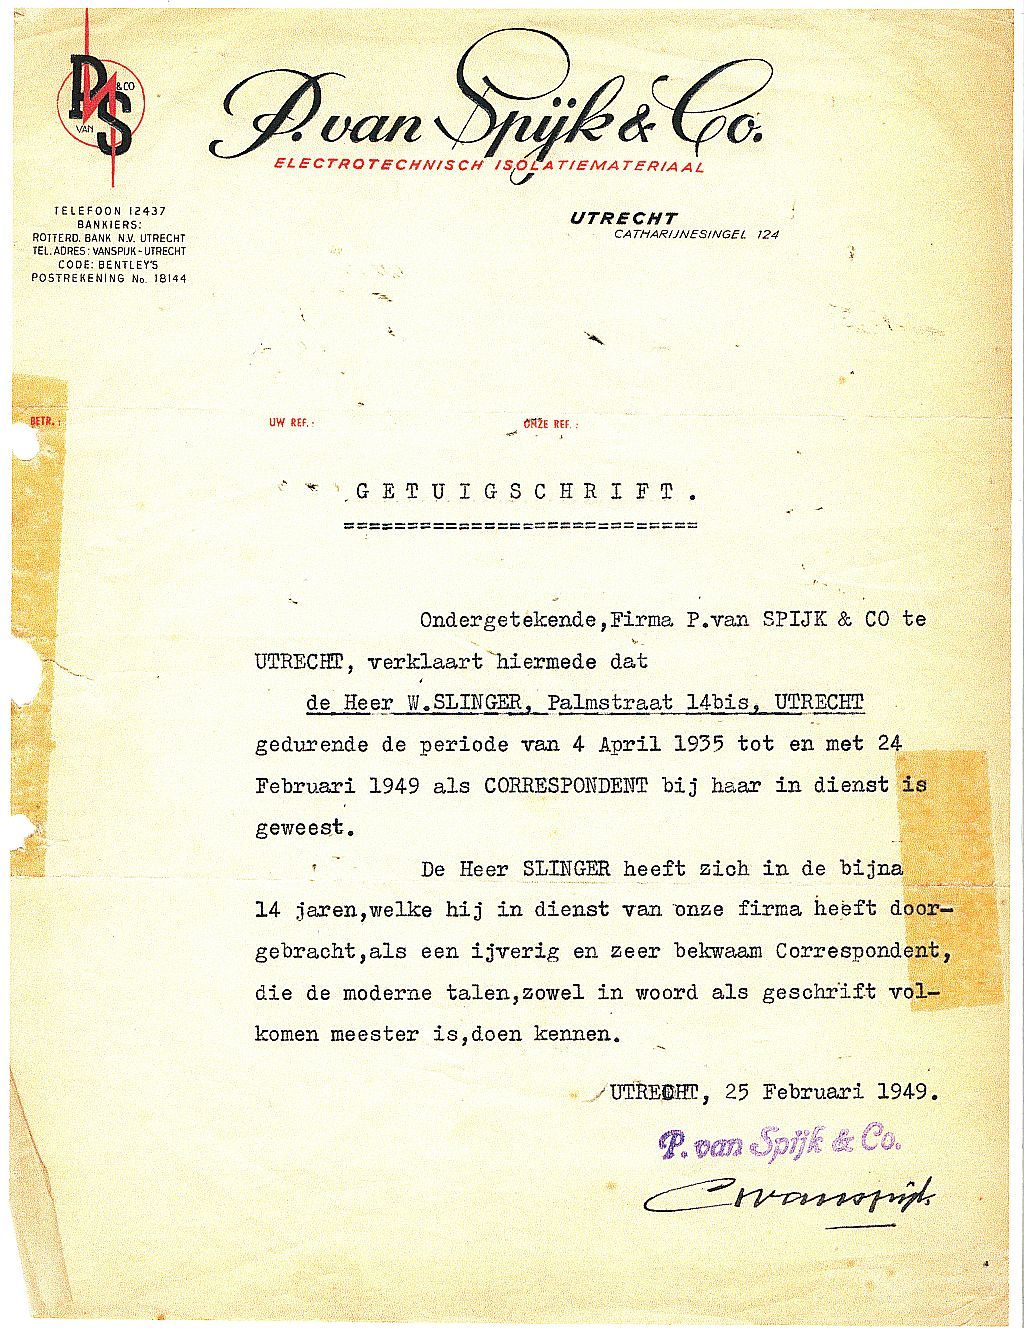 Getuigschrift van Willem C. Slinger bij zijn vertrek bij van Spijk in 1949